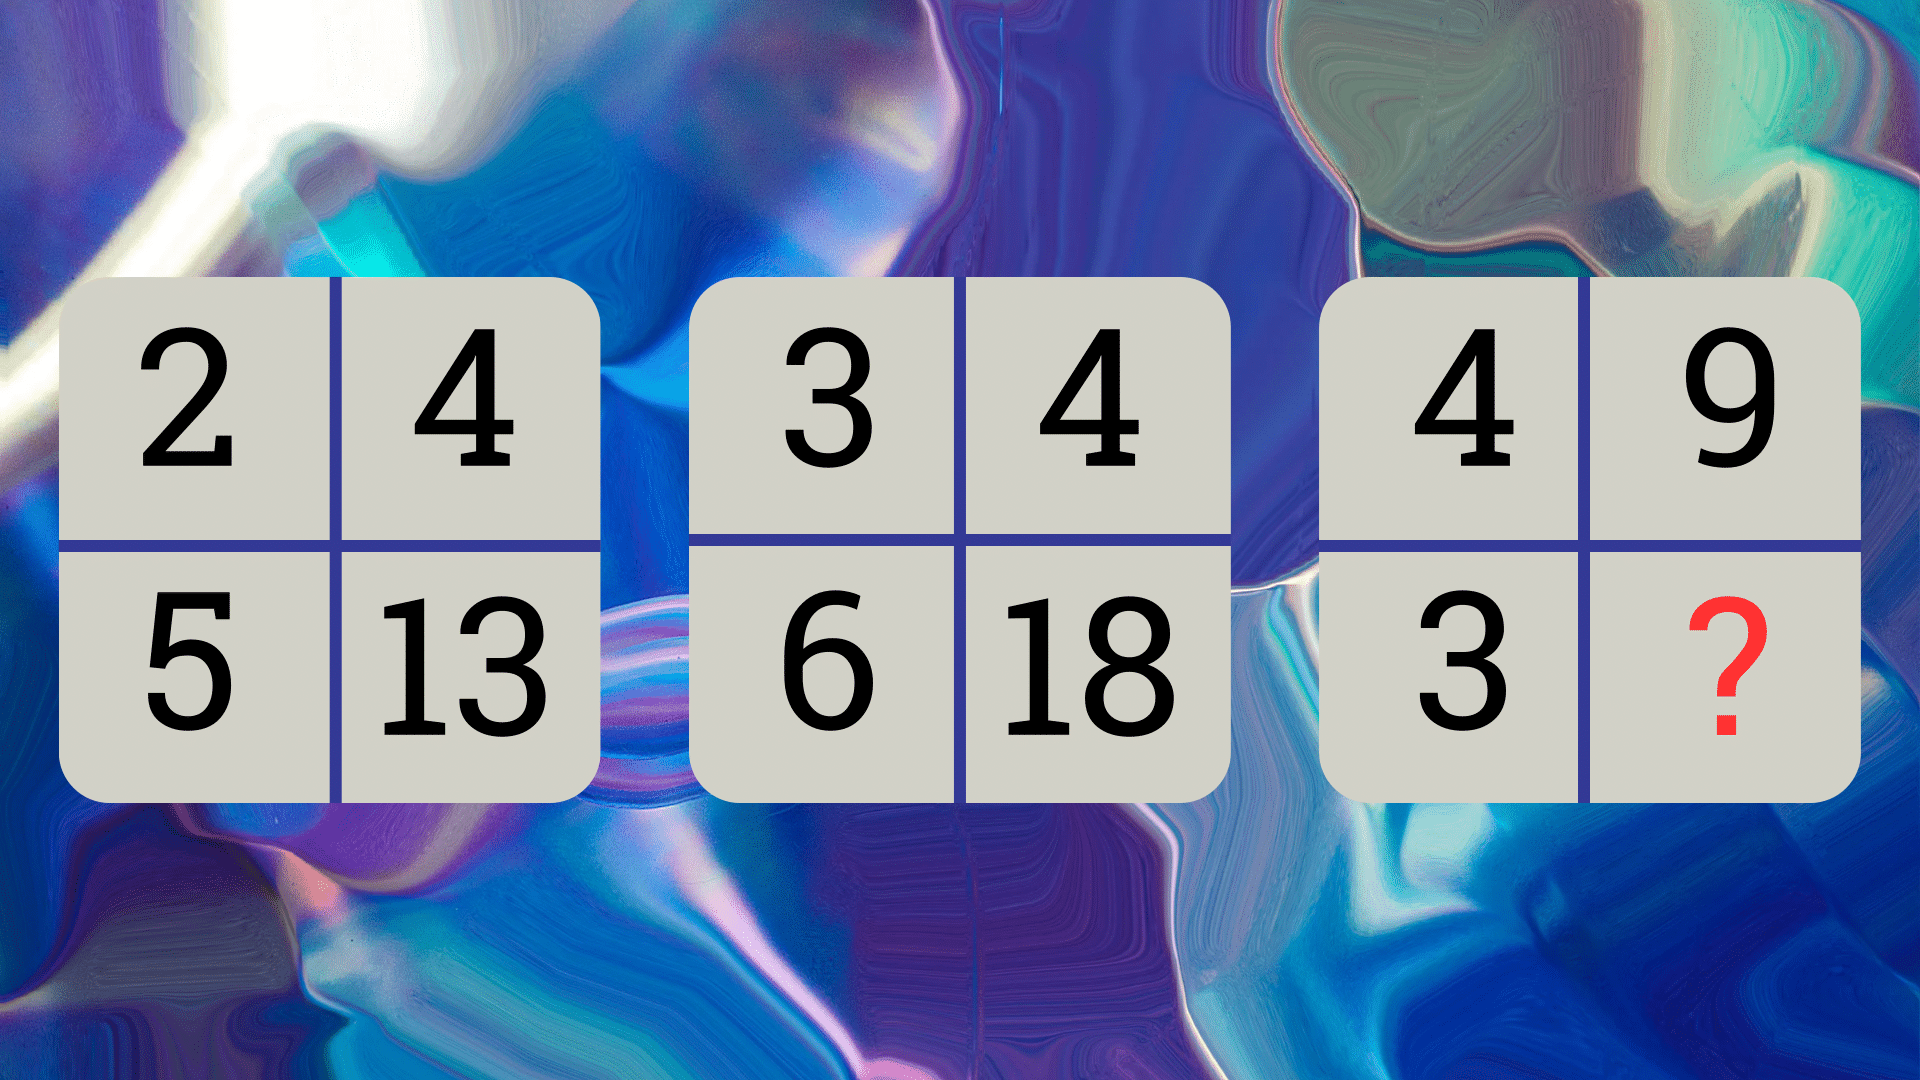 Brza matematička mozgalica za sve: Znate li koji broj nedostaje u nizu?